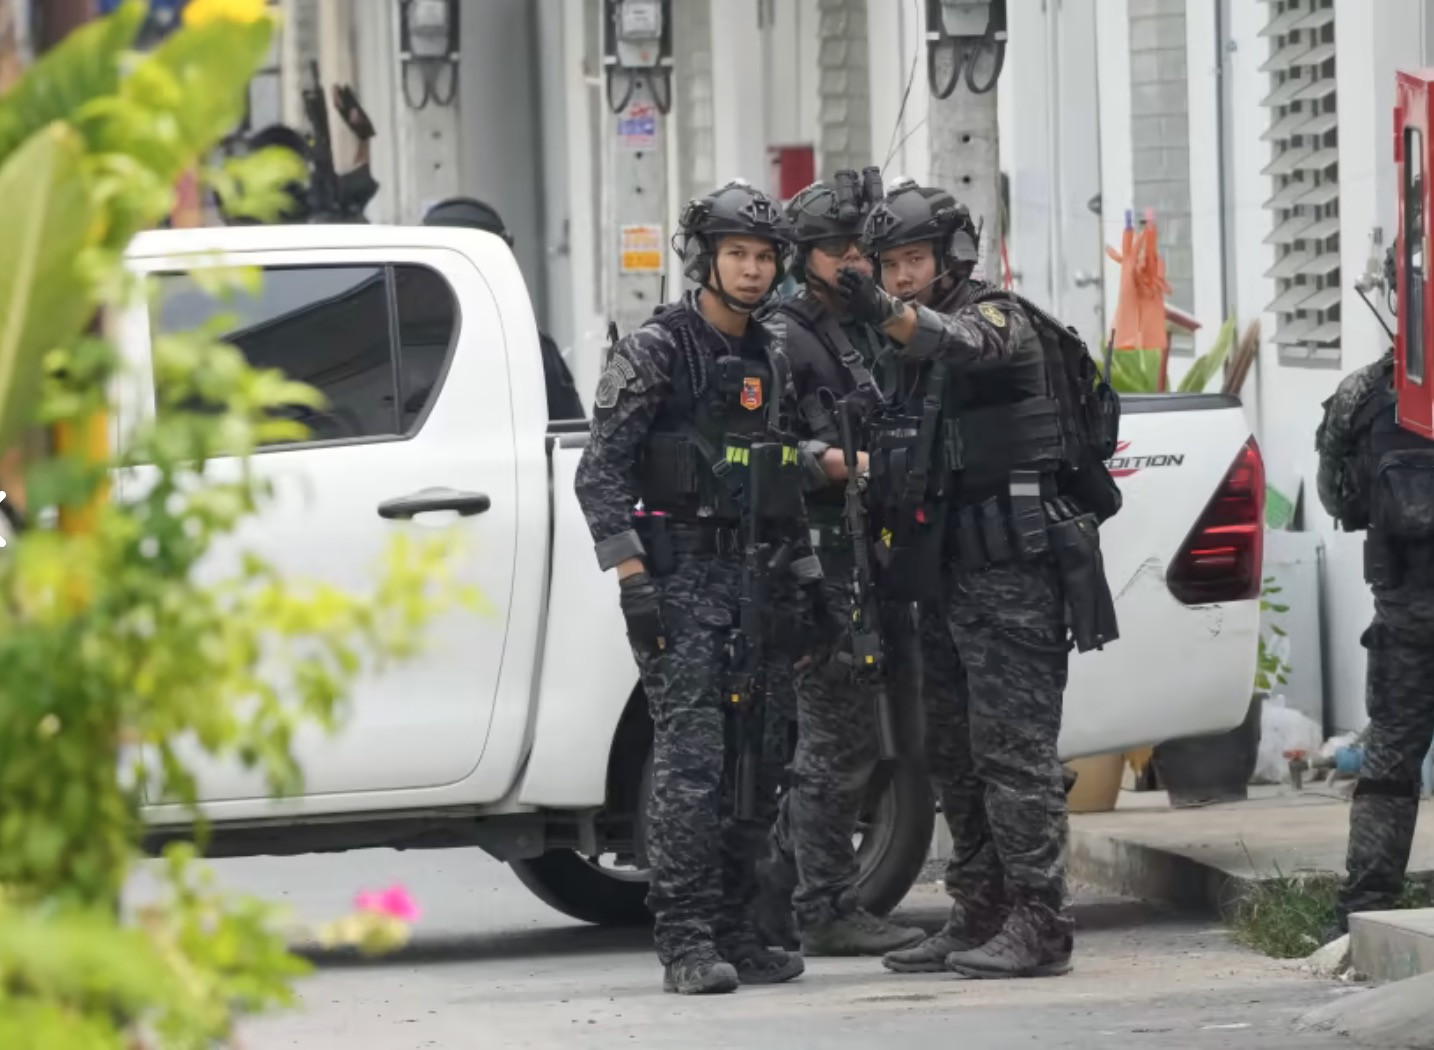 Thái Lan: Tâm lý bất ổn, một cảnh sát xả súng từ nhà riêng